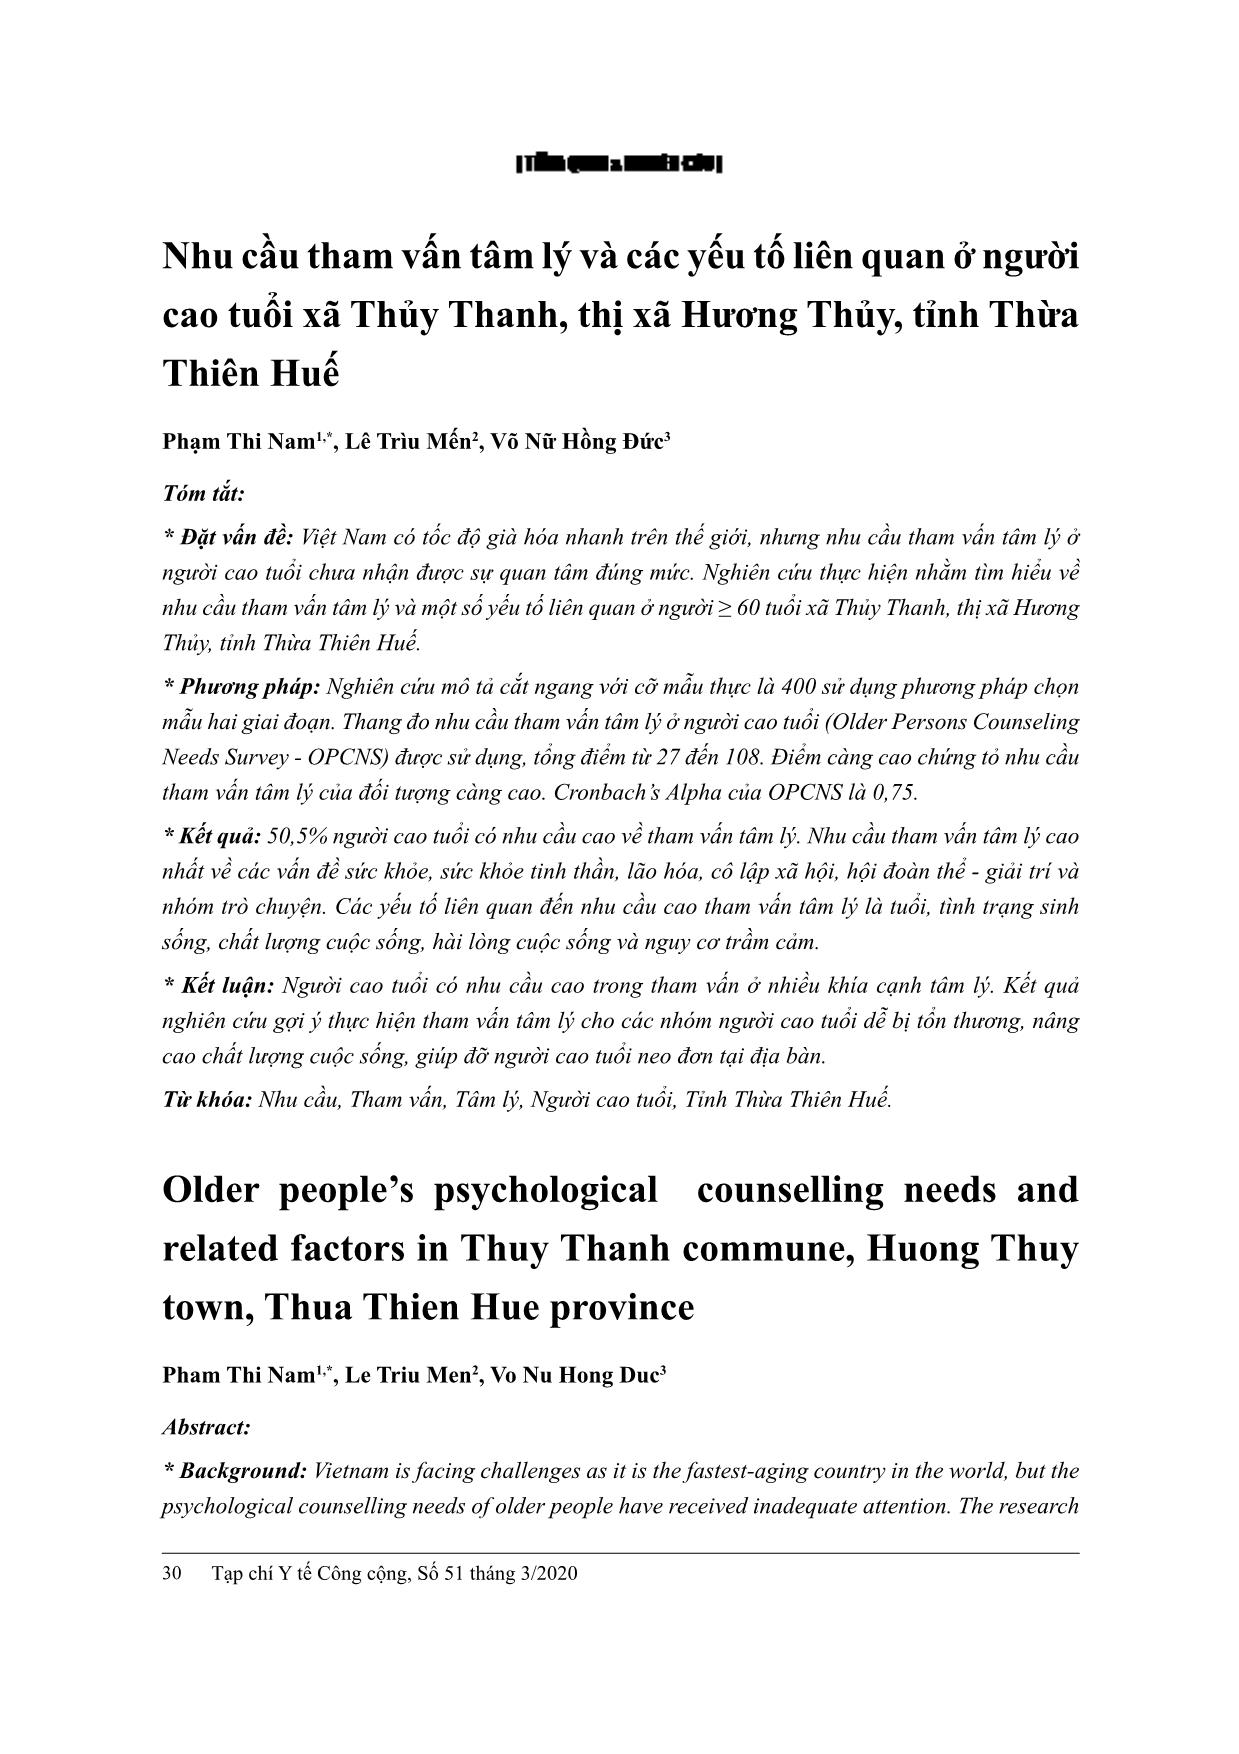 Nhu cầu tham vấn tâm lý và các yếu tố liên quan ở người cao tuổi xã Thủy Thanh, thị xã Hương Thủy, tỉnh Thừa Thiên Huế trang 1